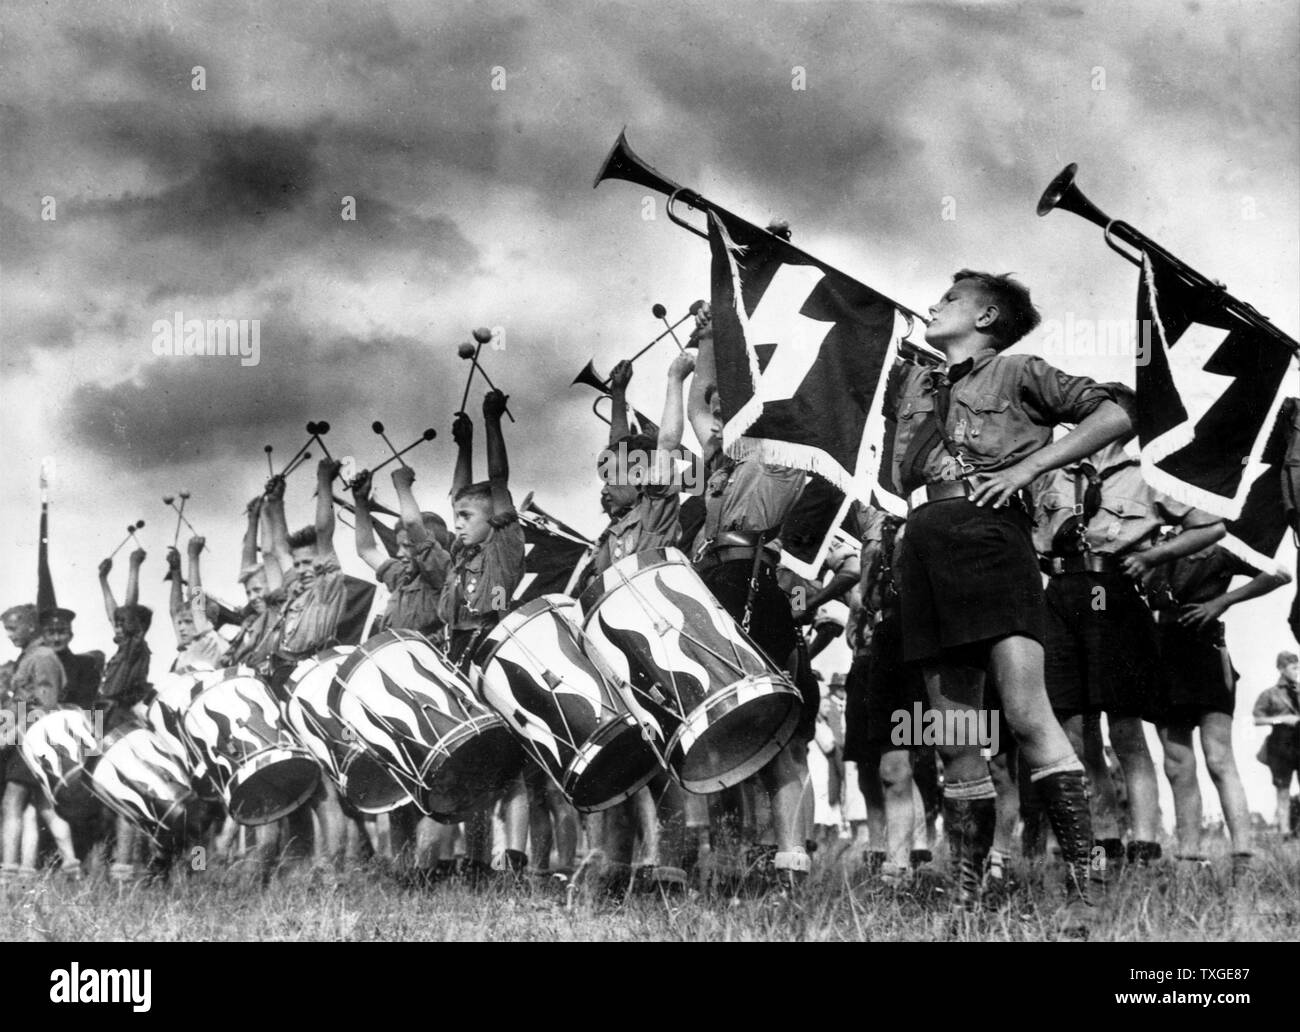 Foto der Hitler-Jugend Mitglieder. Von Helmut Stellrecht (1898-1987) NS-Politiker und Propagandist. Datierte 1939 Stockfoto